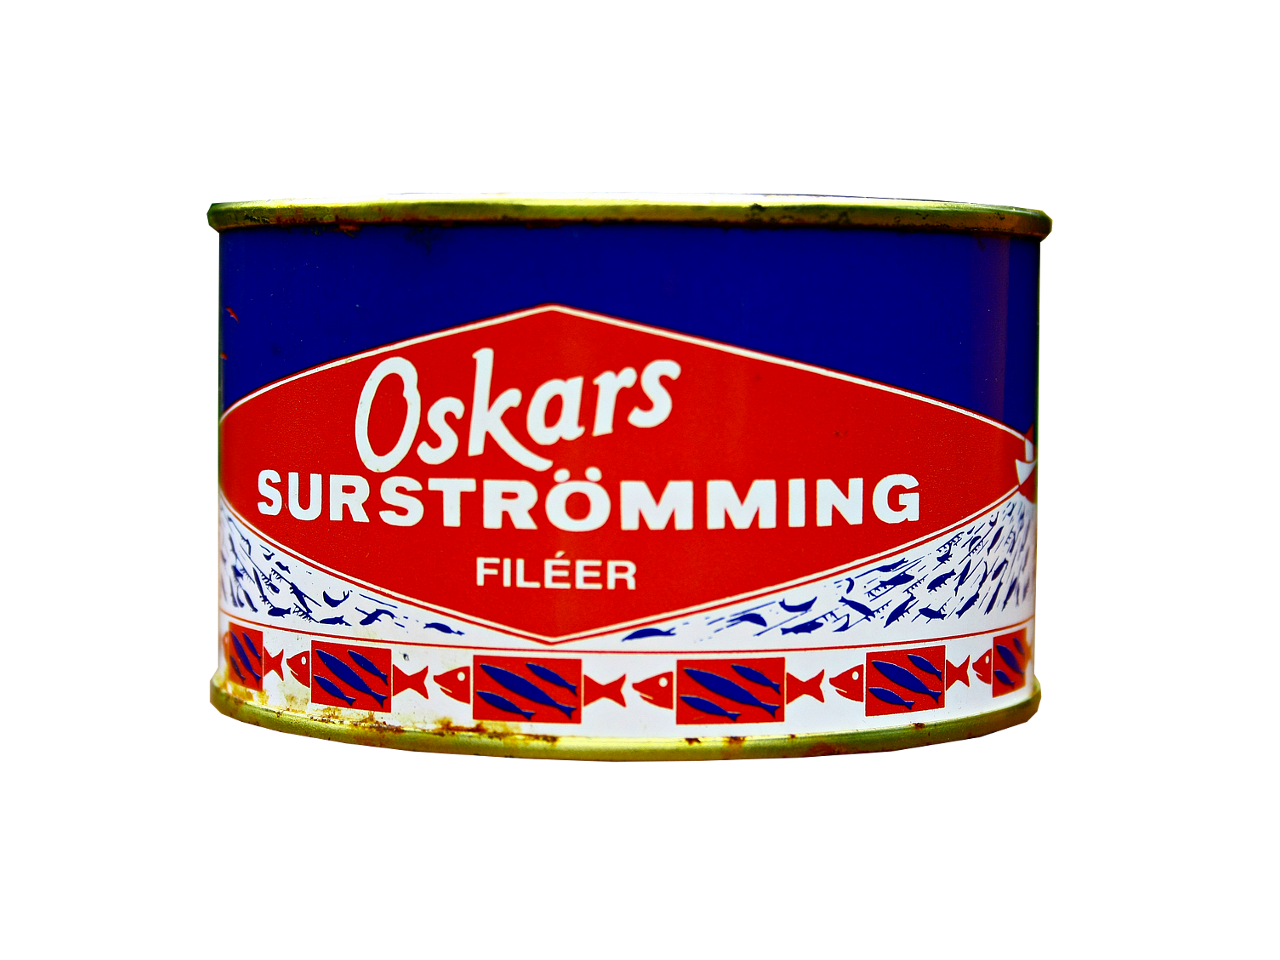 OSKARS Surströmmingfilet 440g/300g Fisch, Dose (fermentierte Heringsfilets)  - Fischgerichte - Fertiggerichte - Food